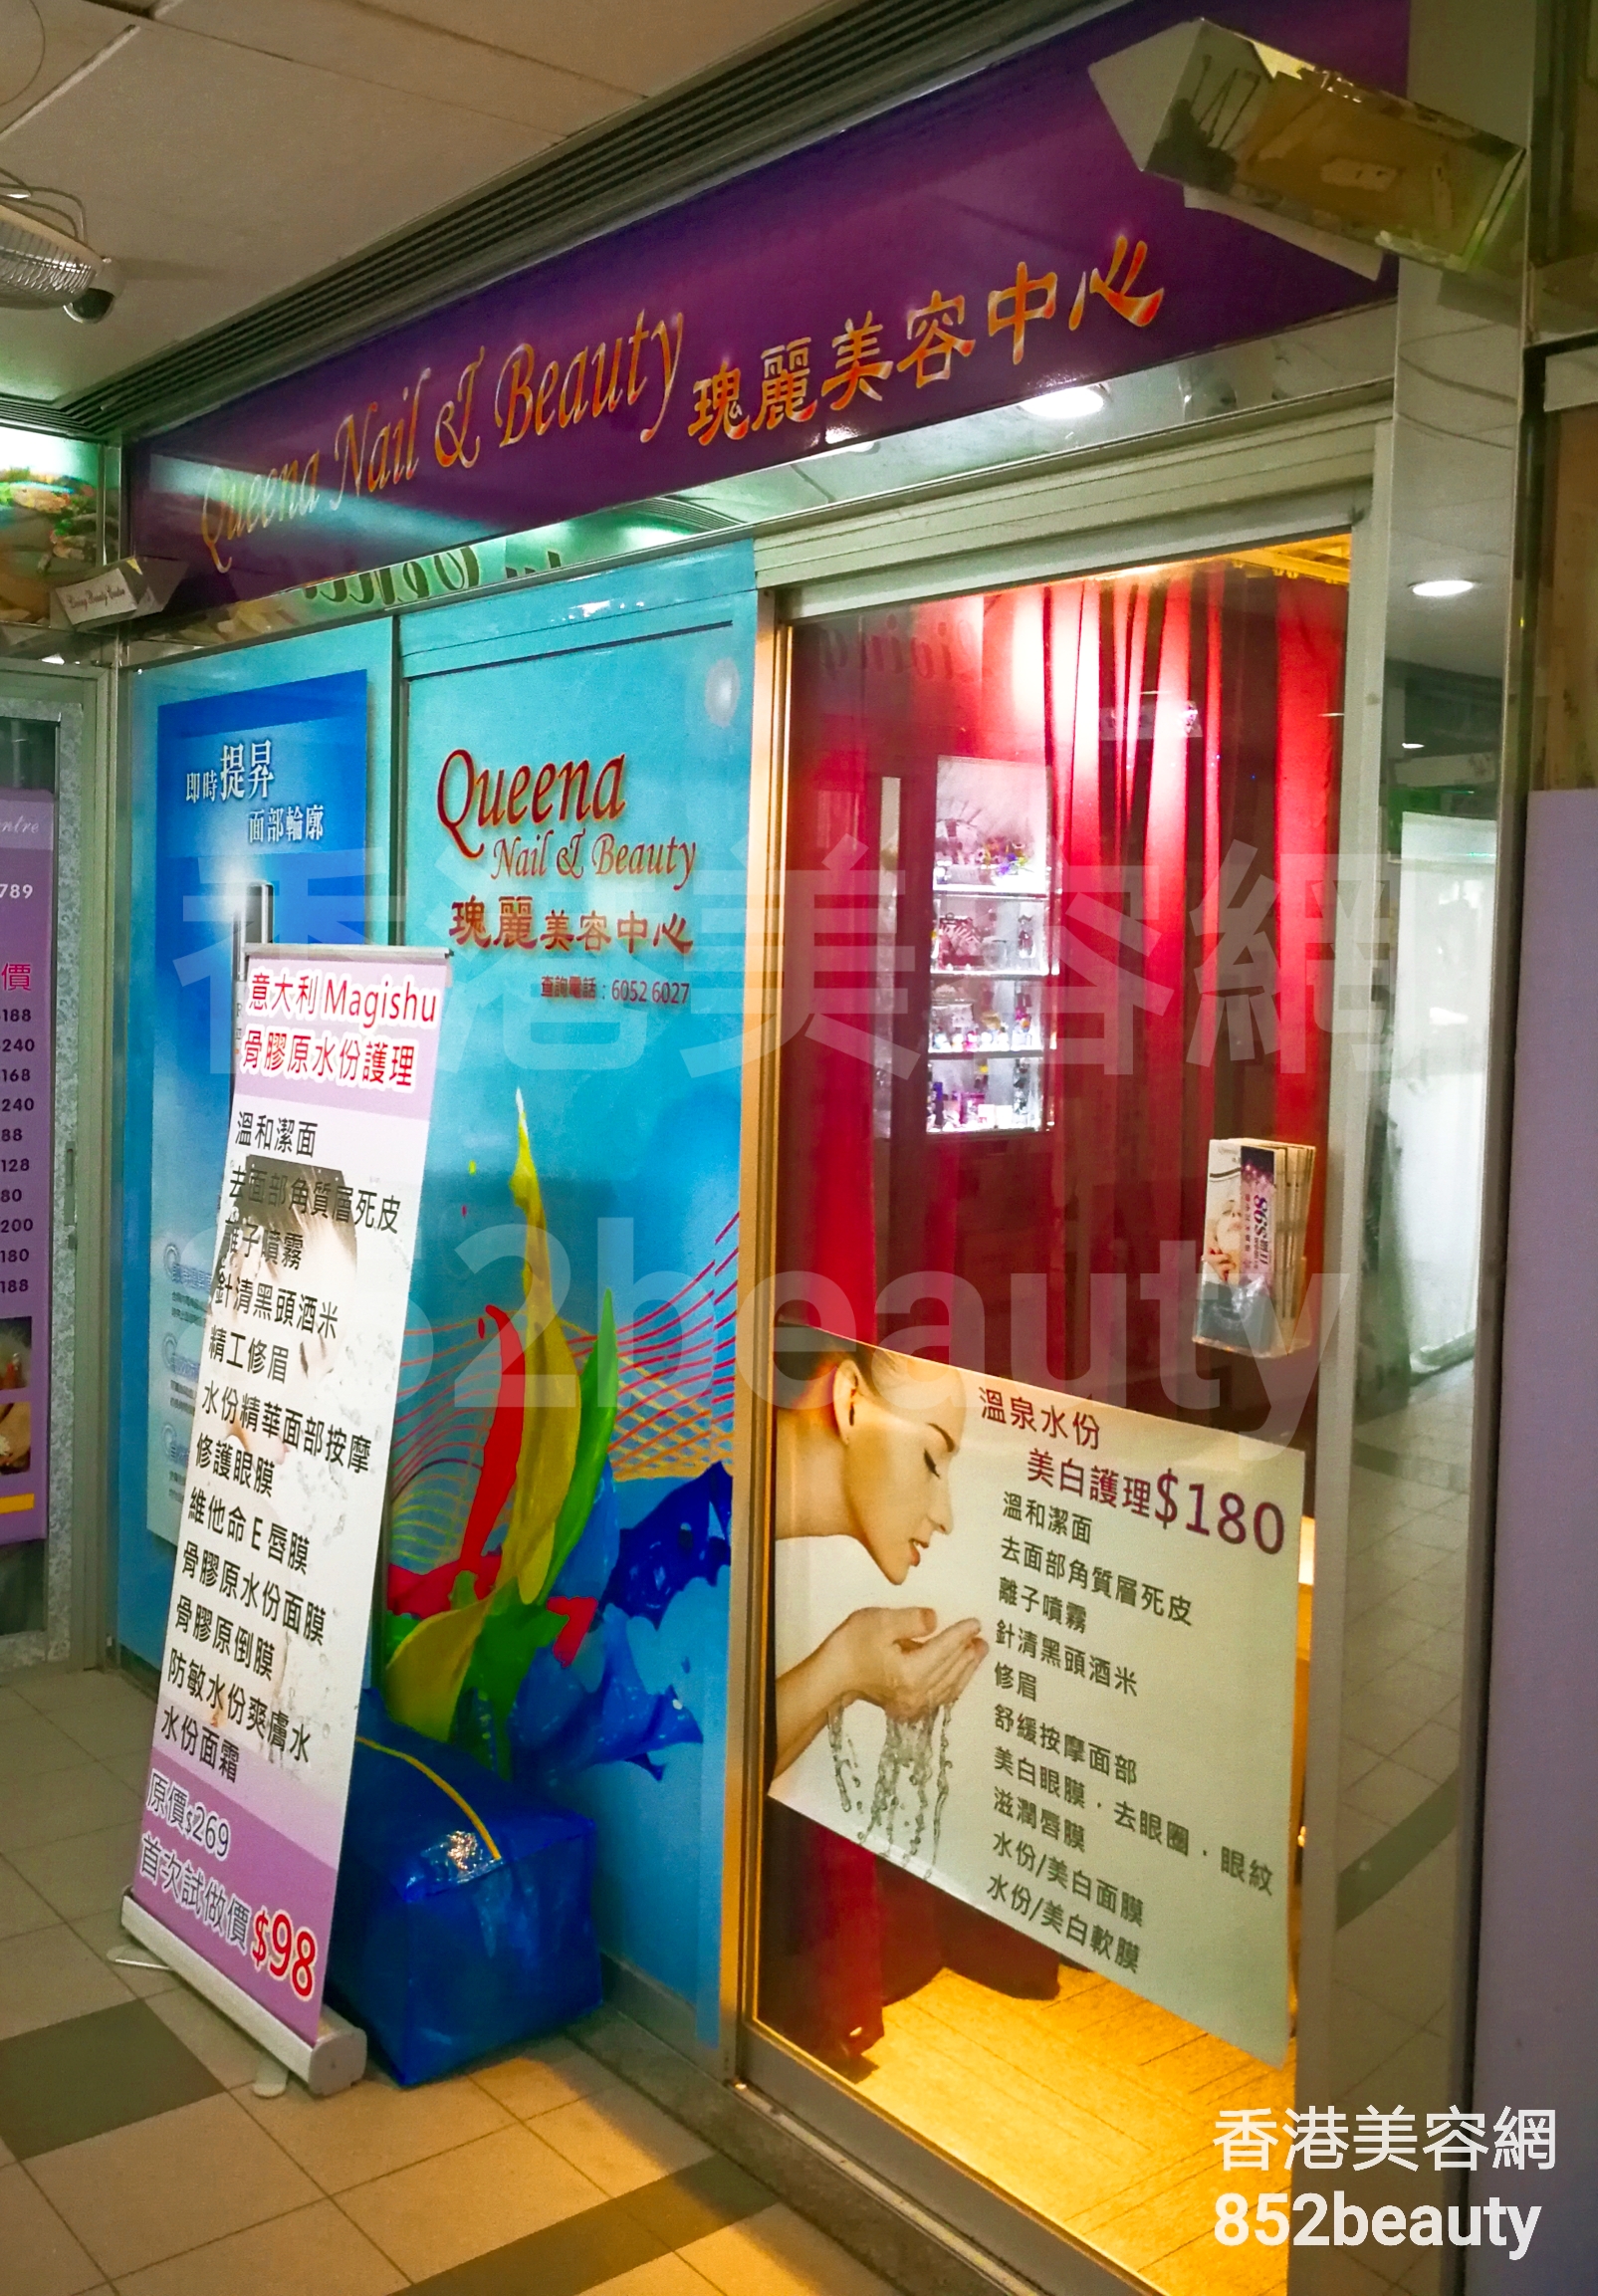 香港美容網 Hong Kong Beauty Salon 美容院 / 美容師: 瑰麗美容中心